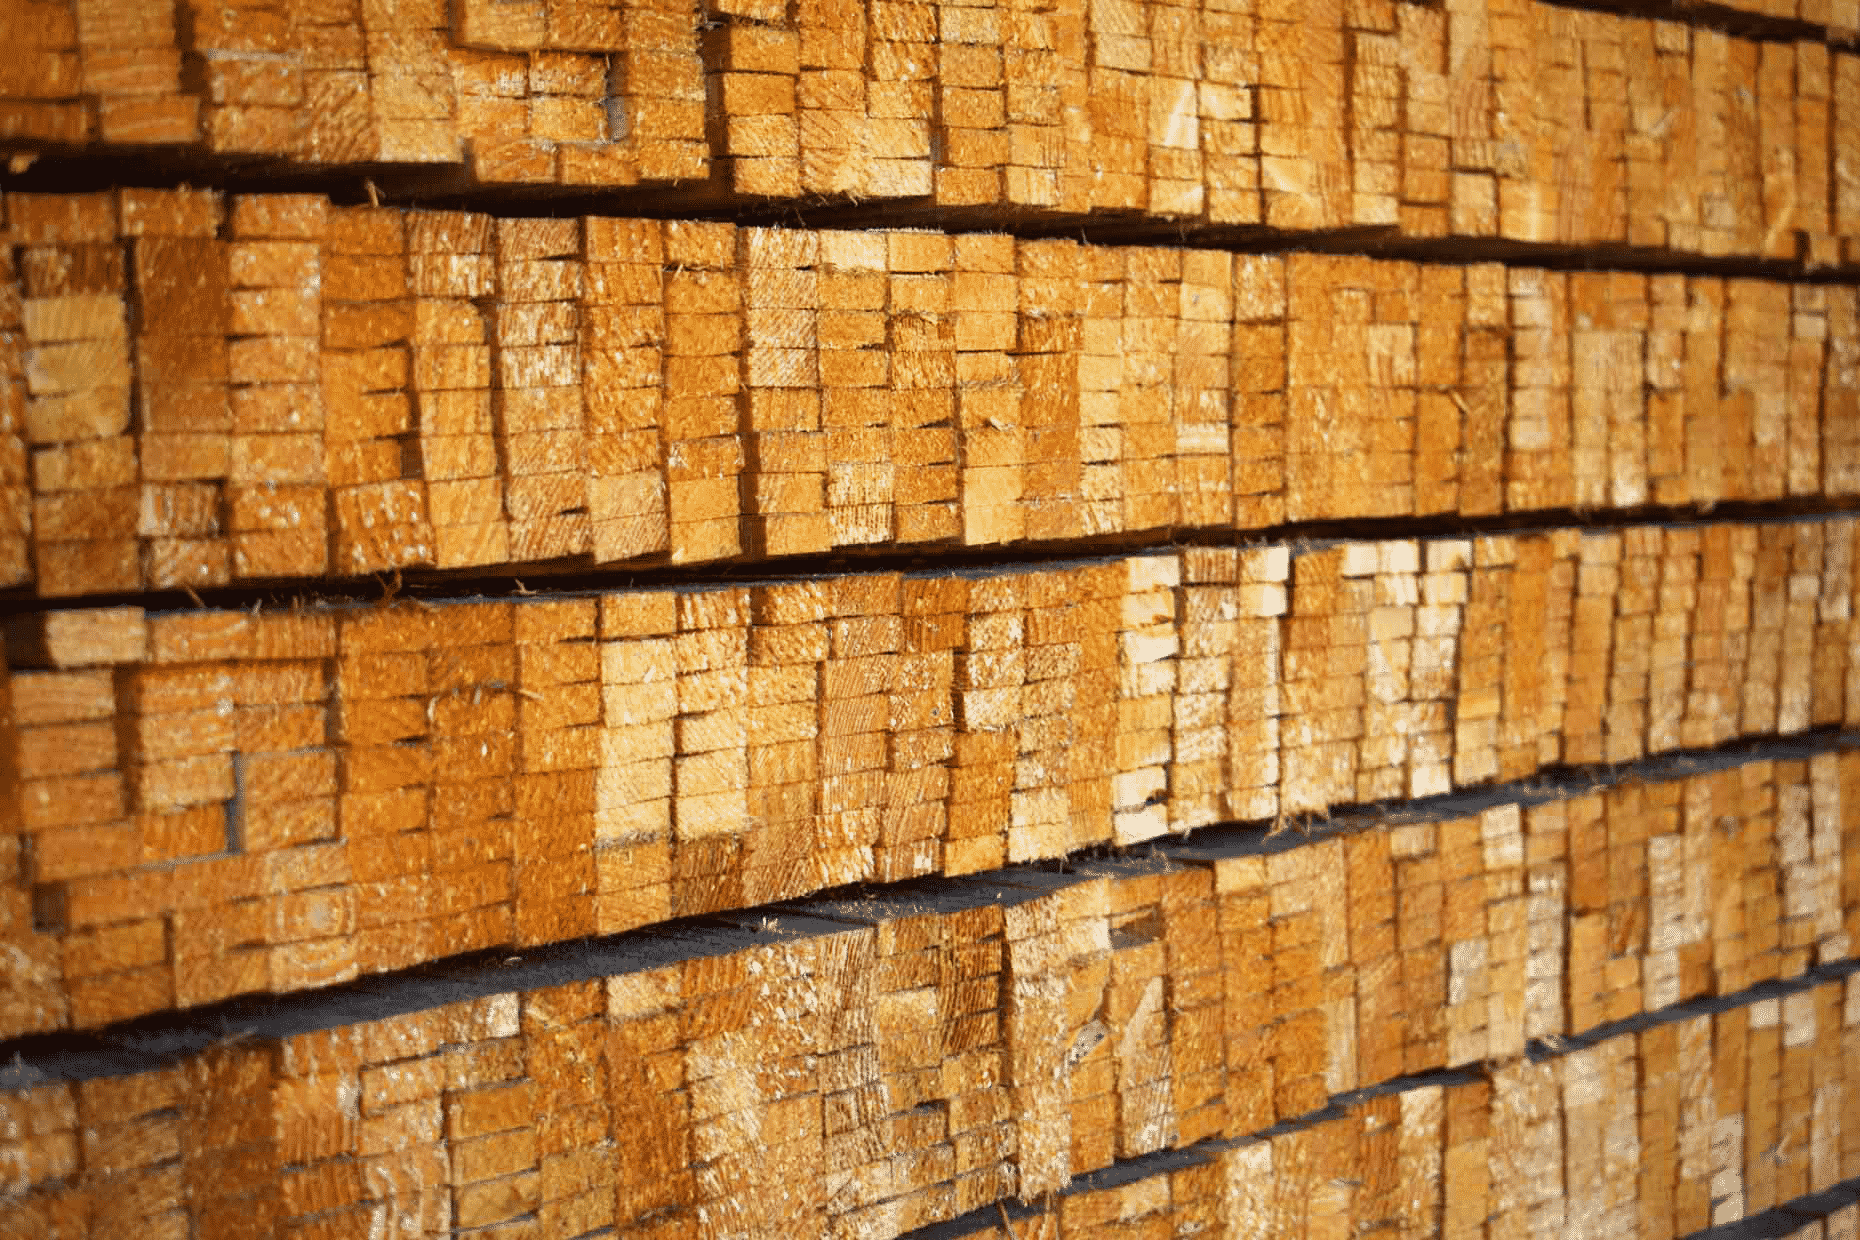 Voorbeeld van schoorhout, dunne planken